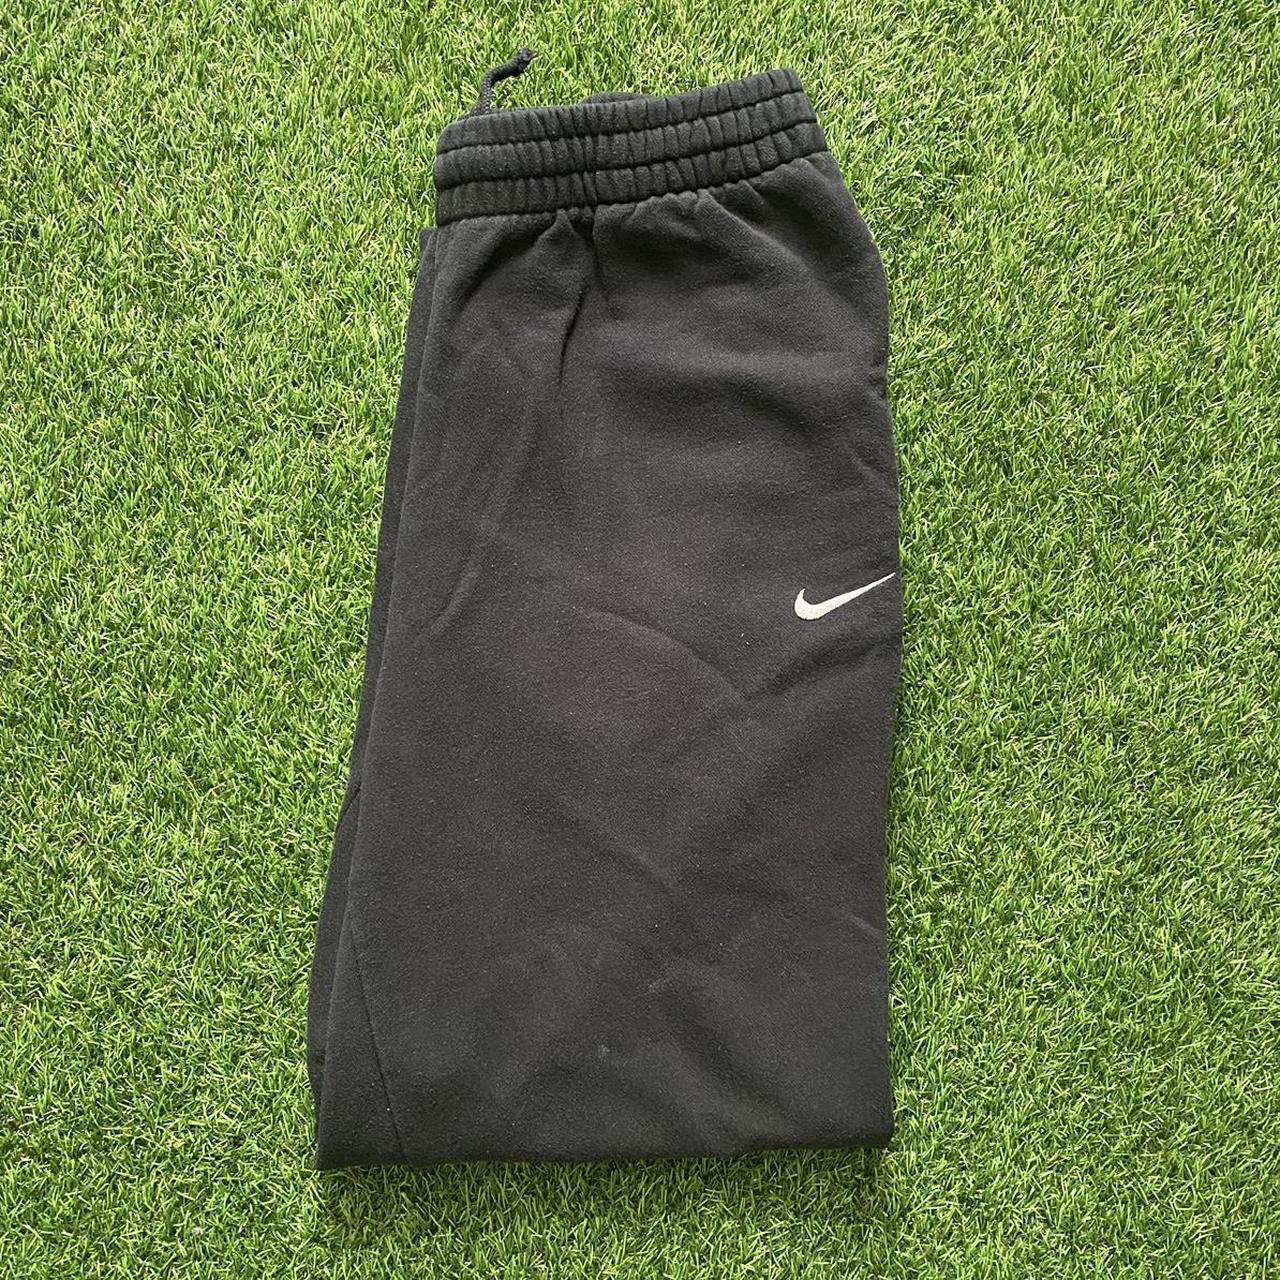 Nike Sweatpants A necessity in ur wardrobe, fits... - Depop